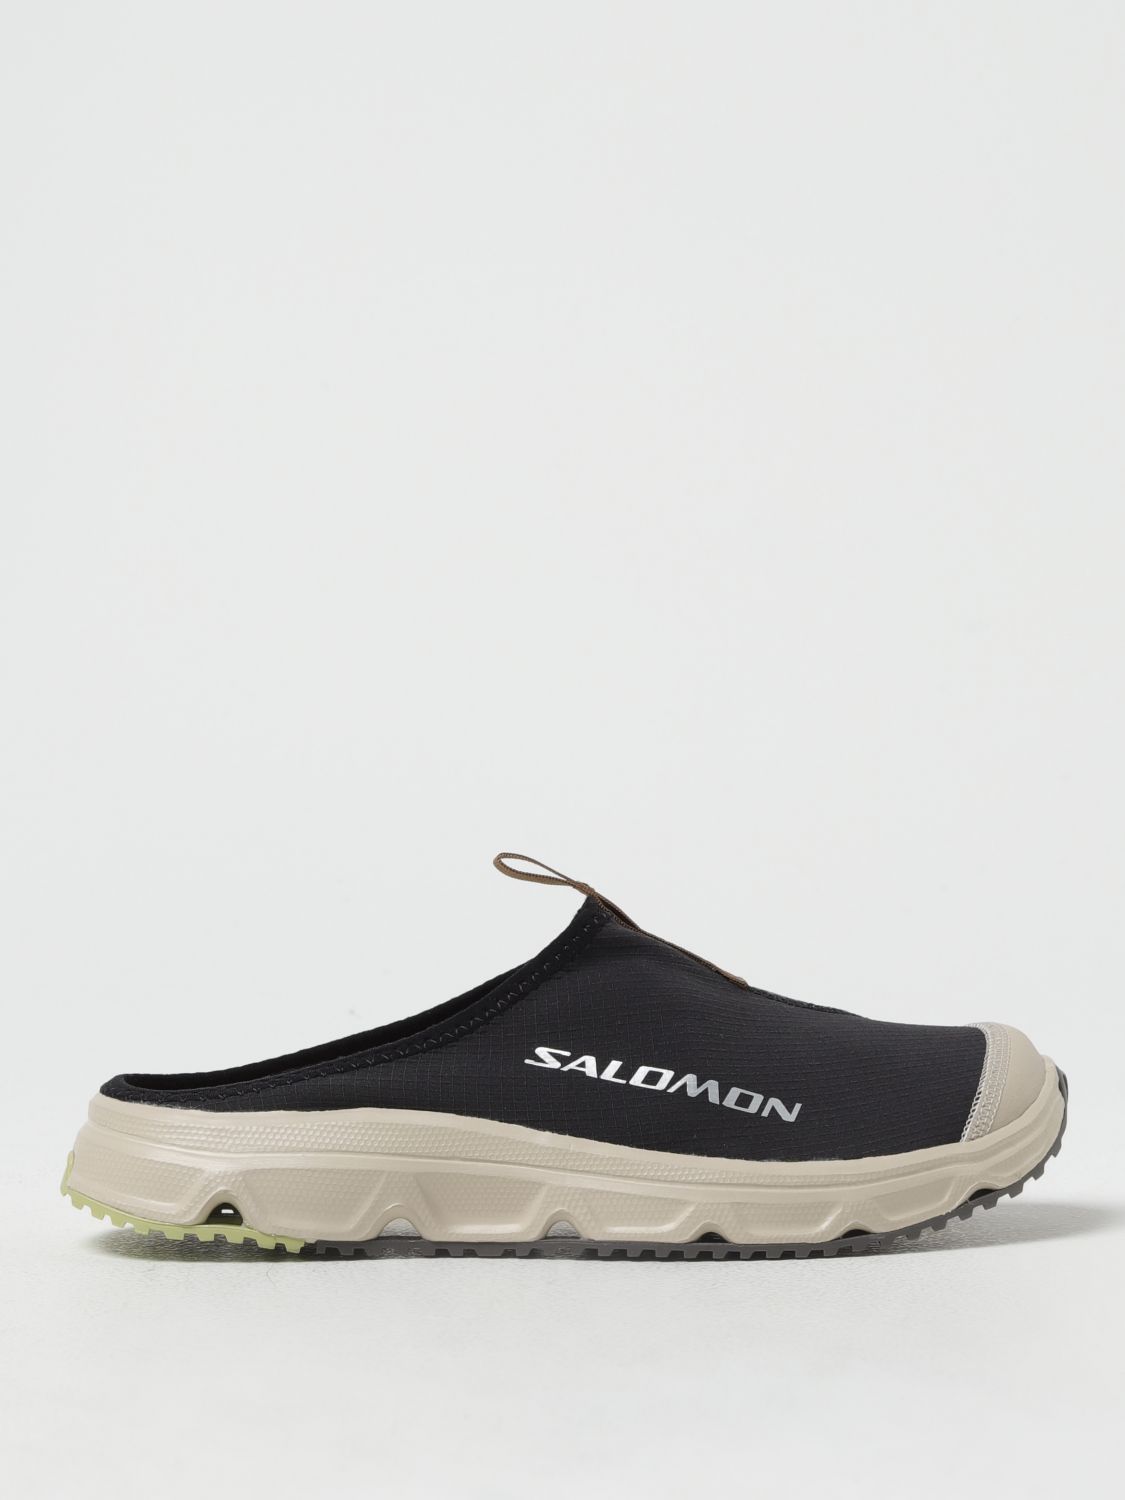 Salomon Shoes  Men Color Black